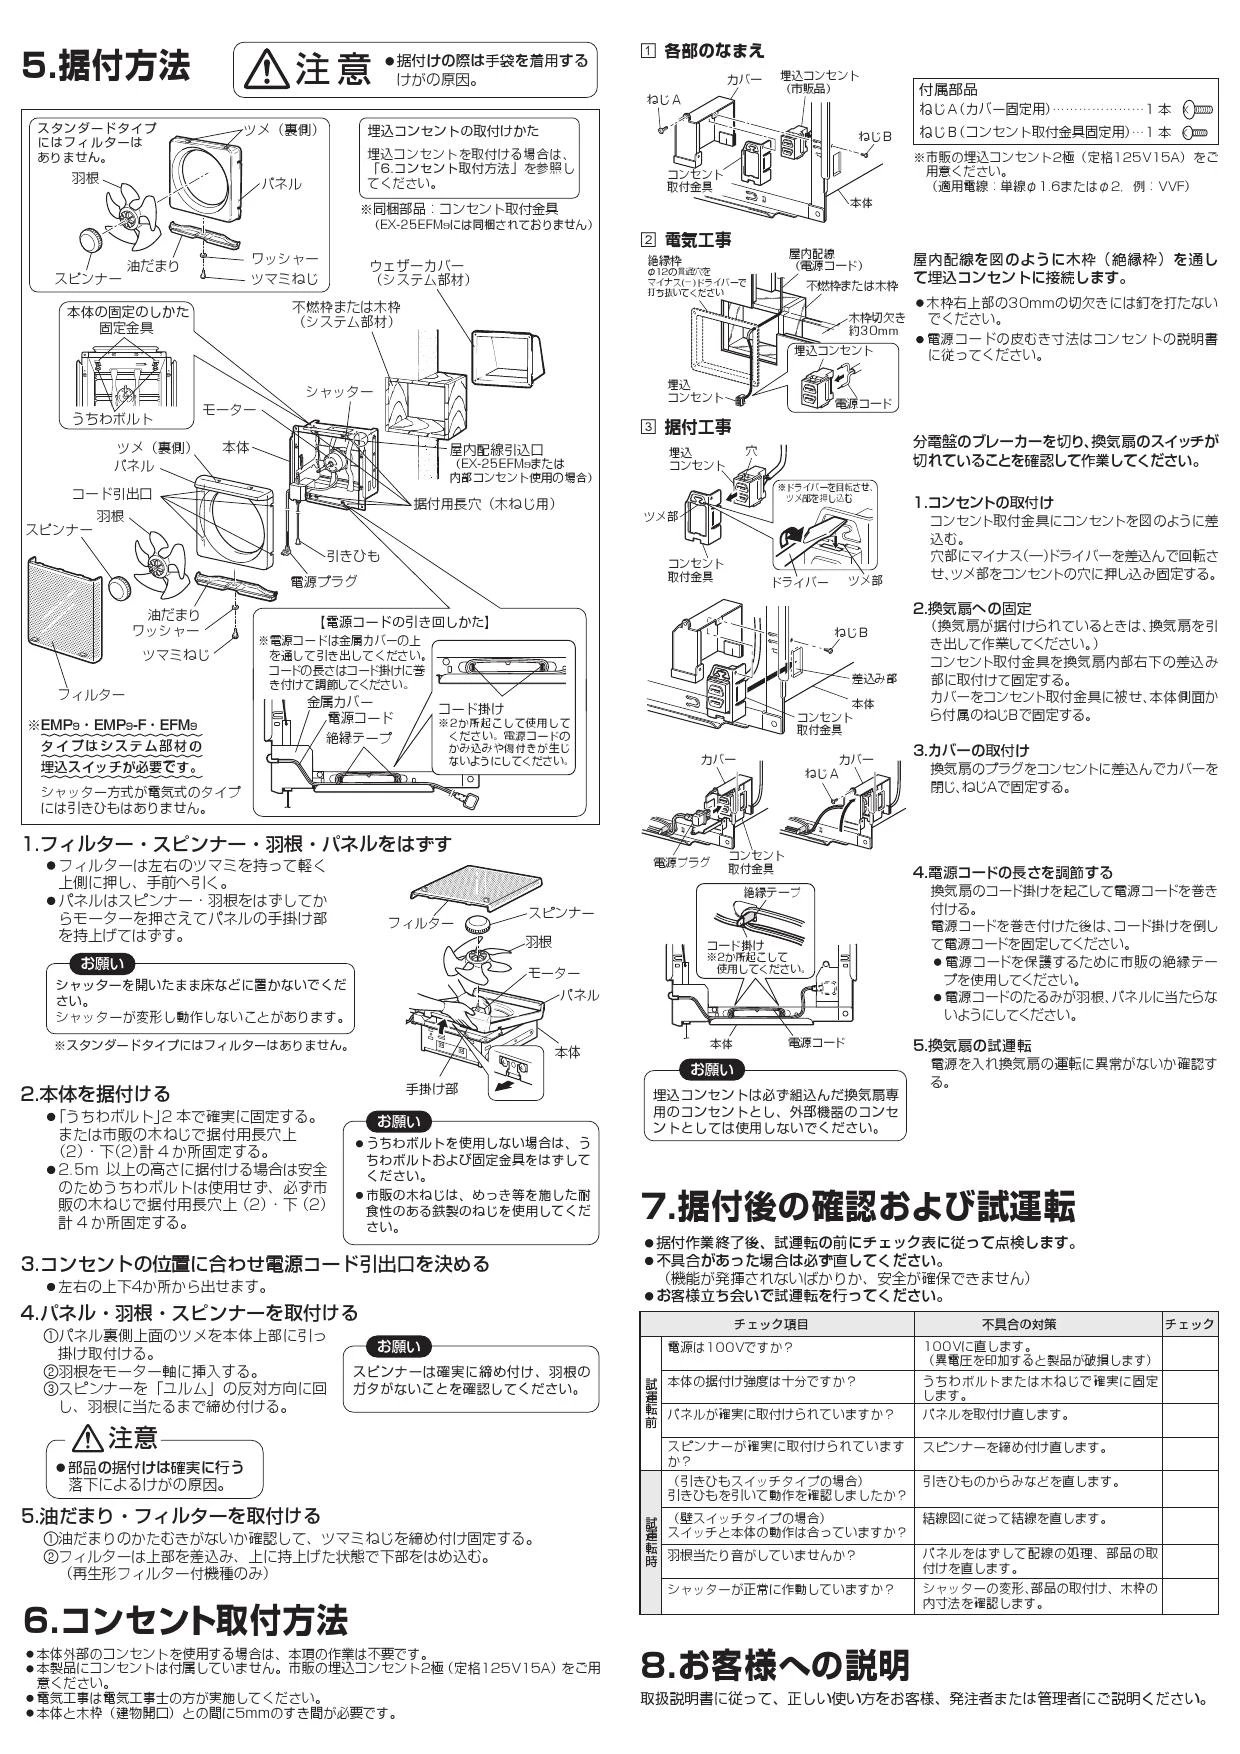 三菱電機 EX-20EMP9 取扱説明書 納入仕様図|三菱電機 台所用換気扇の 